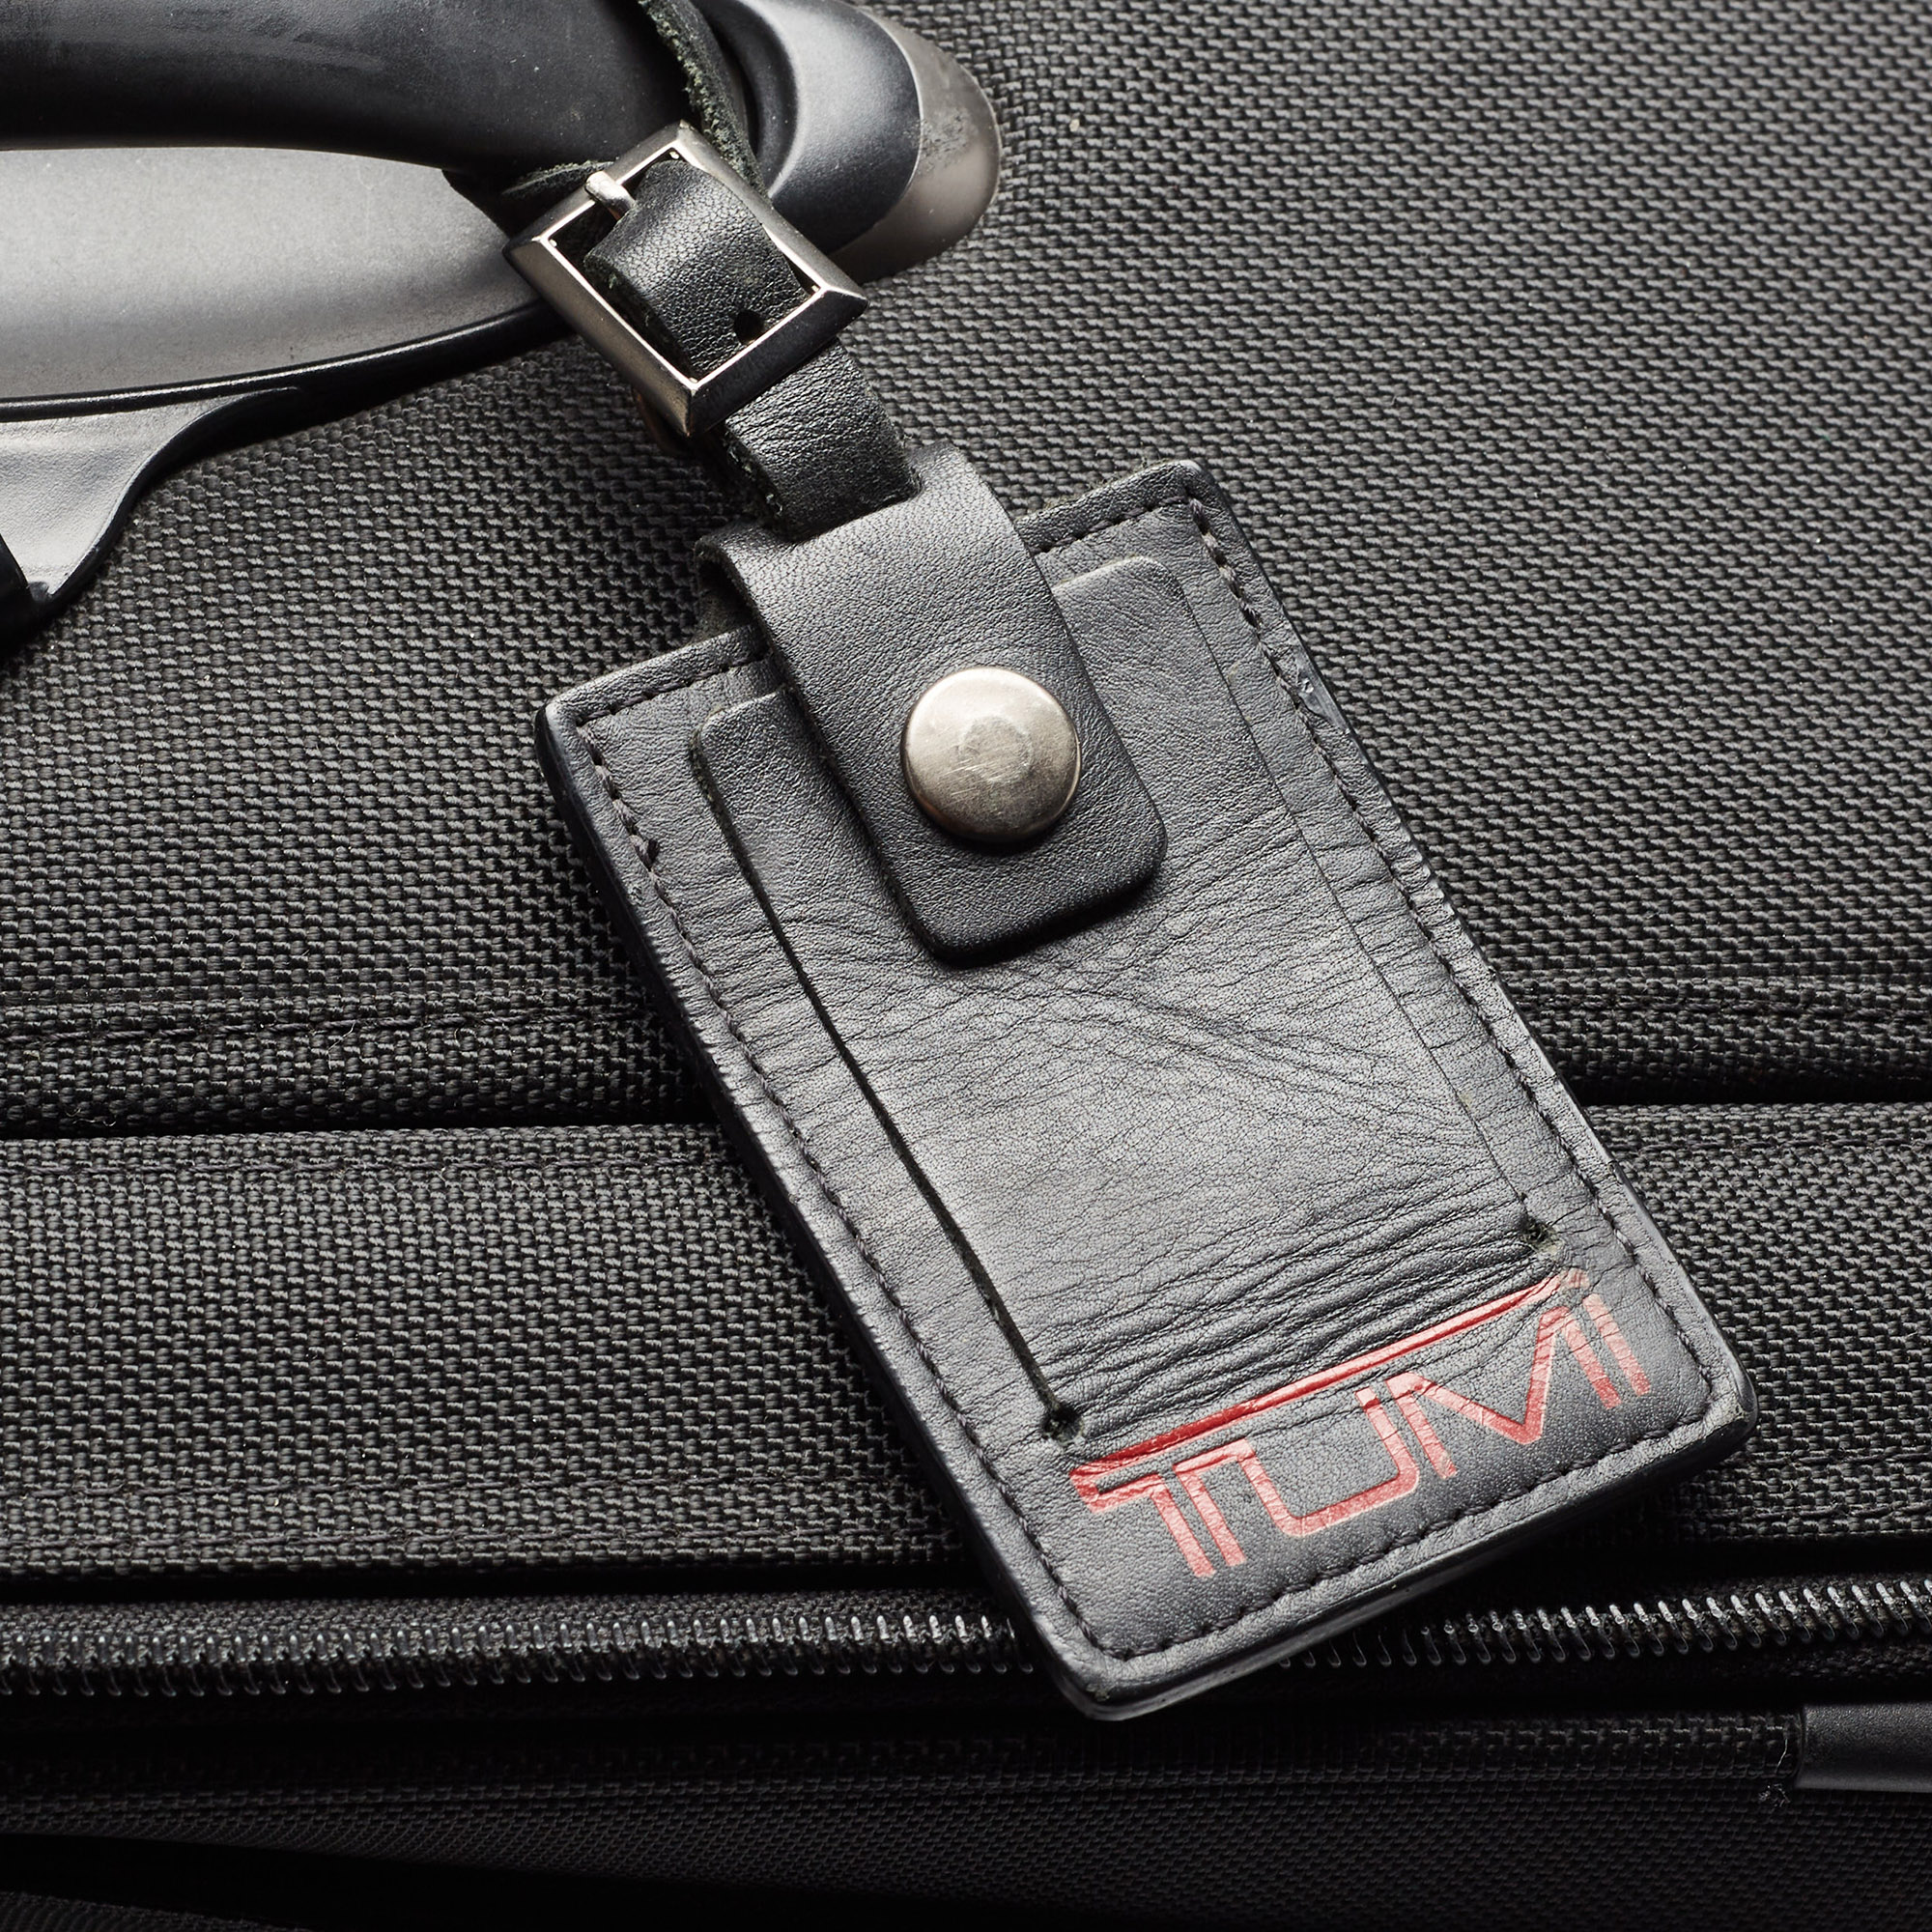 Tumi Black Ballistic Nylon 2 Wheeled Generation 4 Expandable Trip Luggage